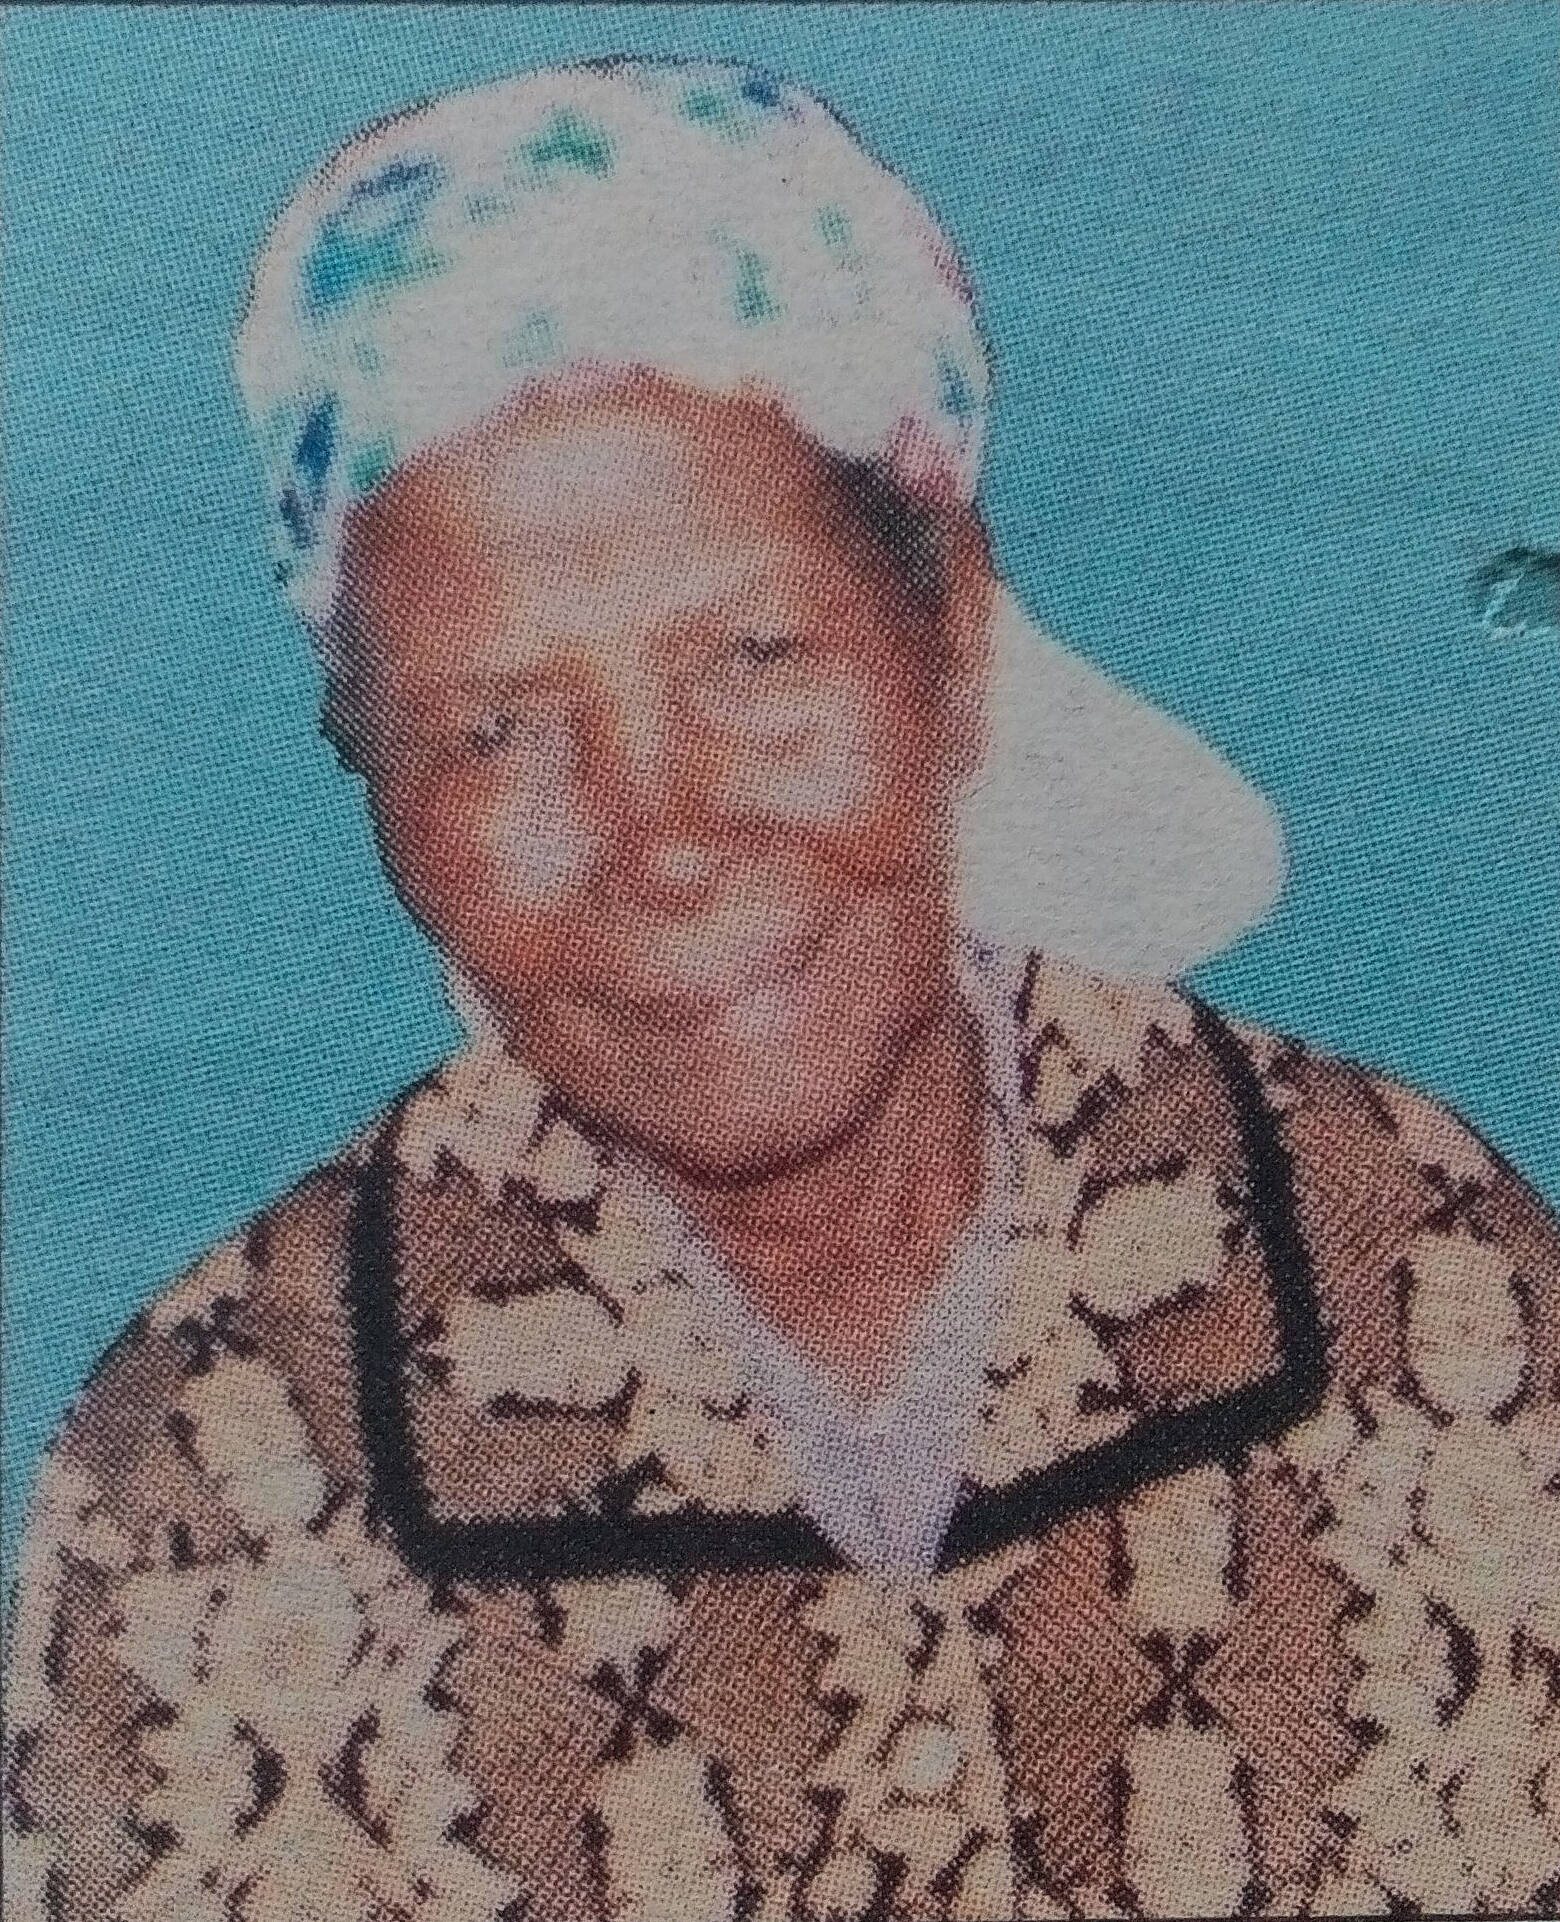 Obituary Image of Maria Karegi Ngeera 1930-14/03/2017